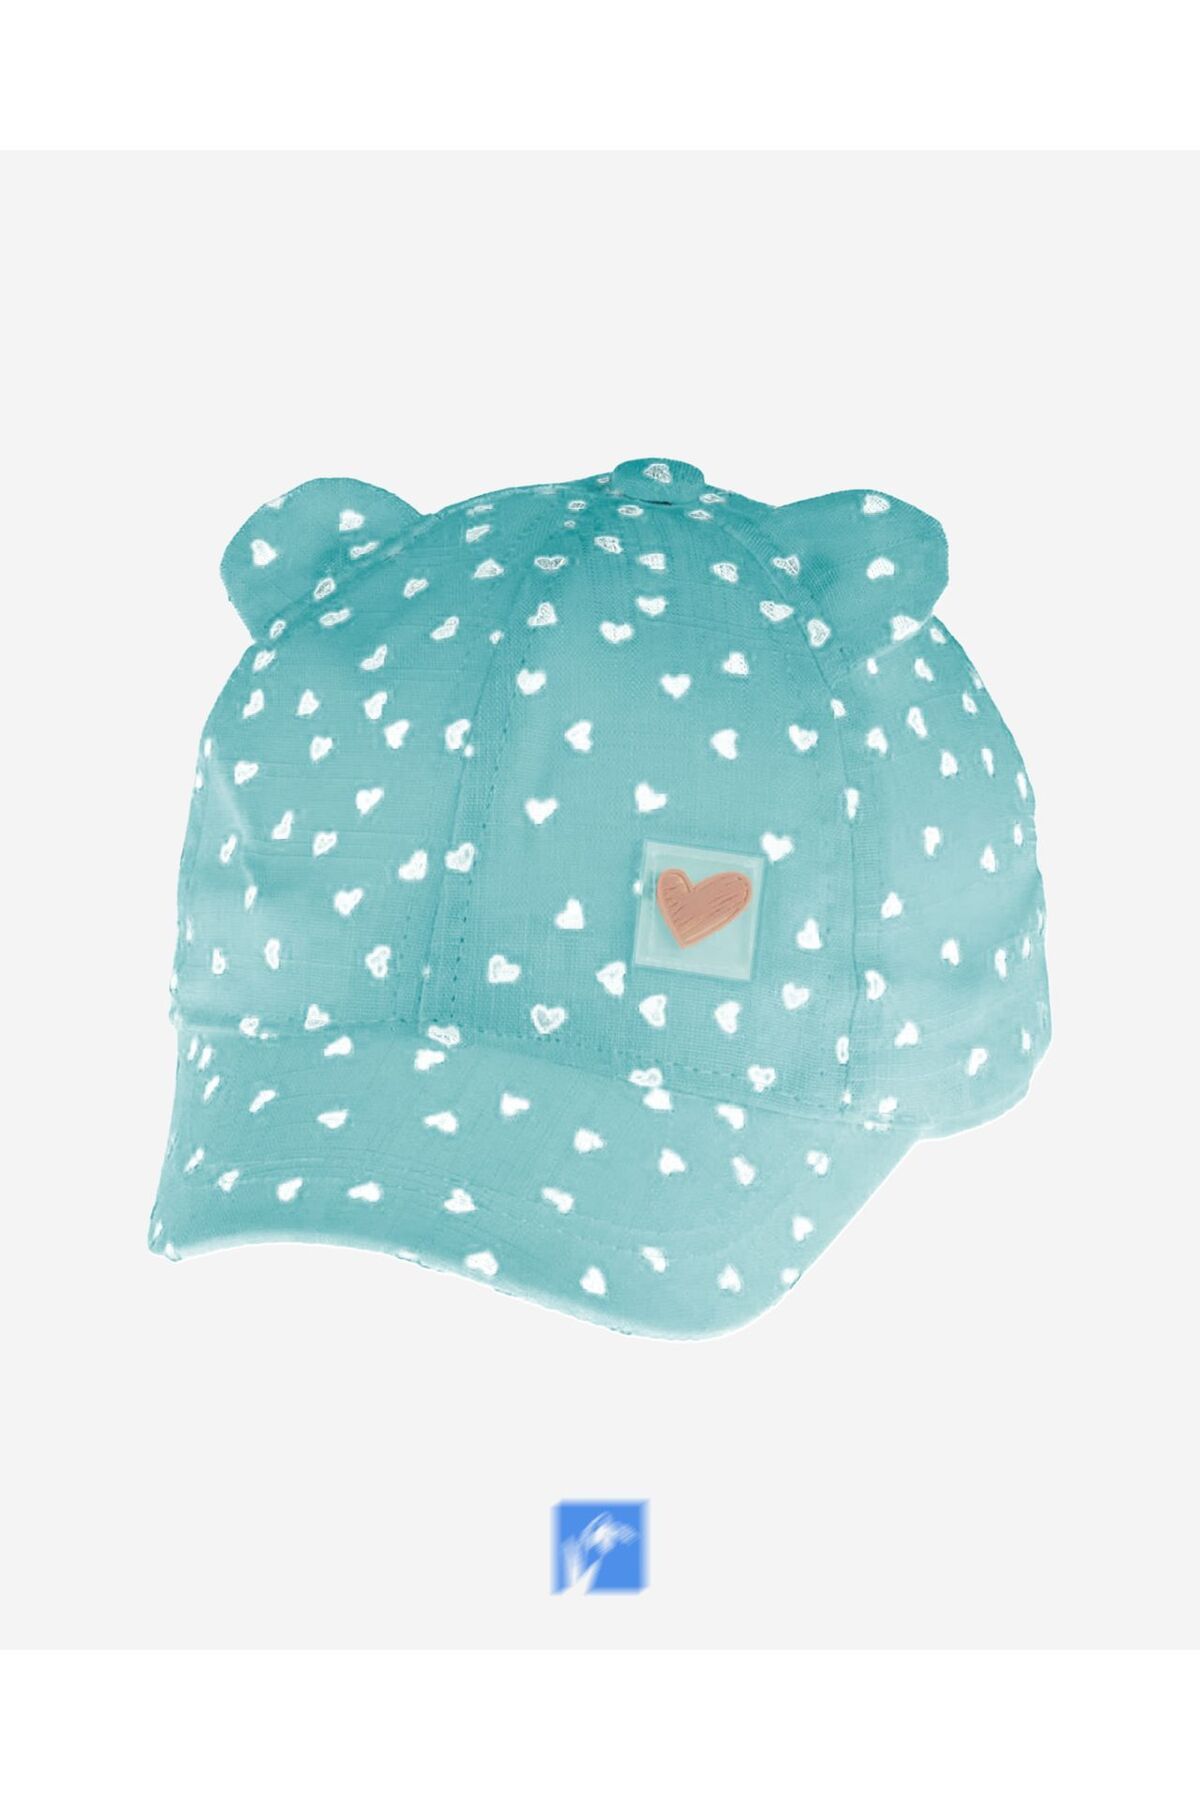 Kardelen Butik Denizli %100 Pamuk Bebek  Güneş Şapkası  ( Kız Çocukları İçin ) ( 0-18 Aylık ) ( Size 44-46 )